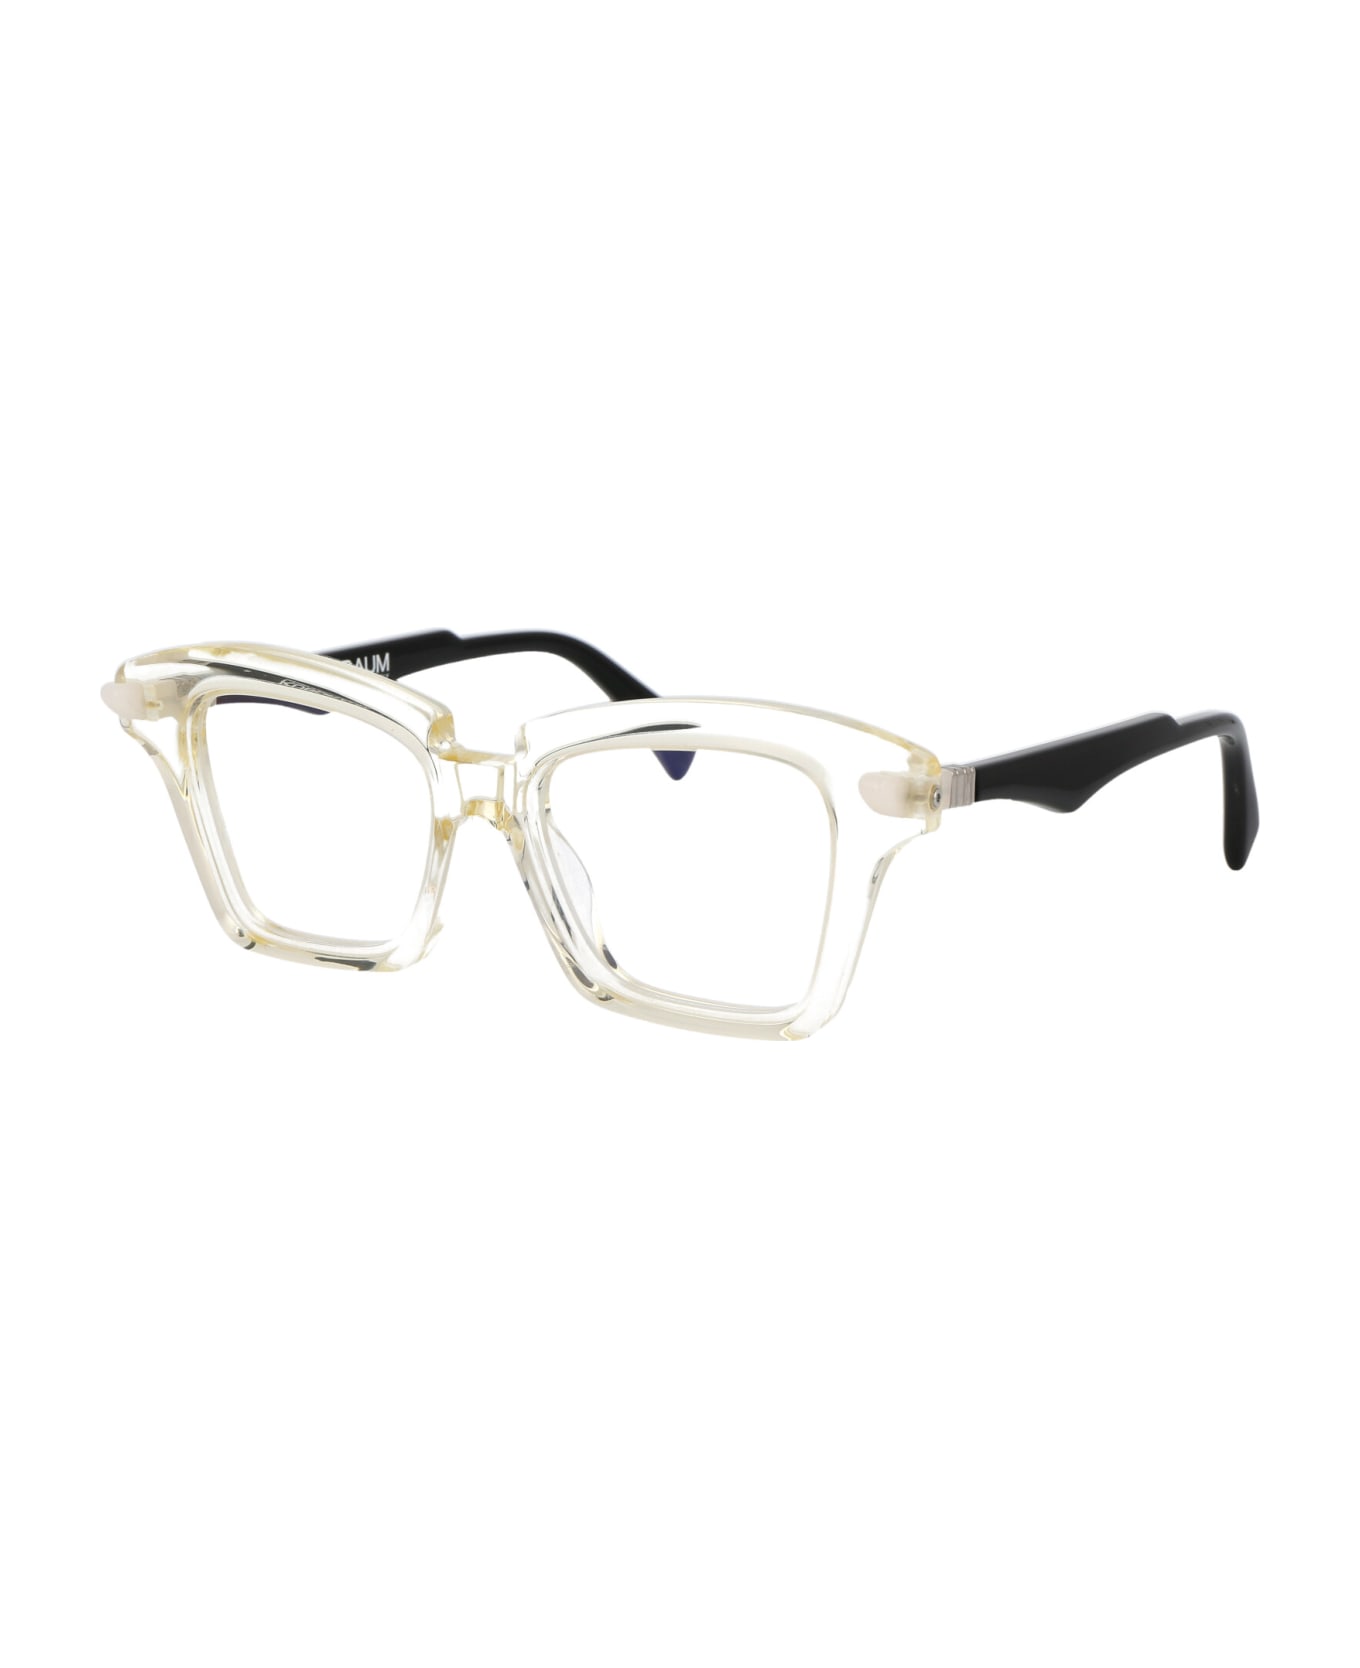 Kuboraum Maske Q1 Glasses - CHP アイウェア